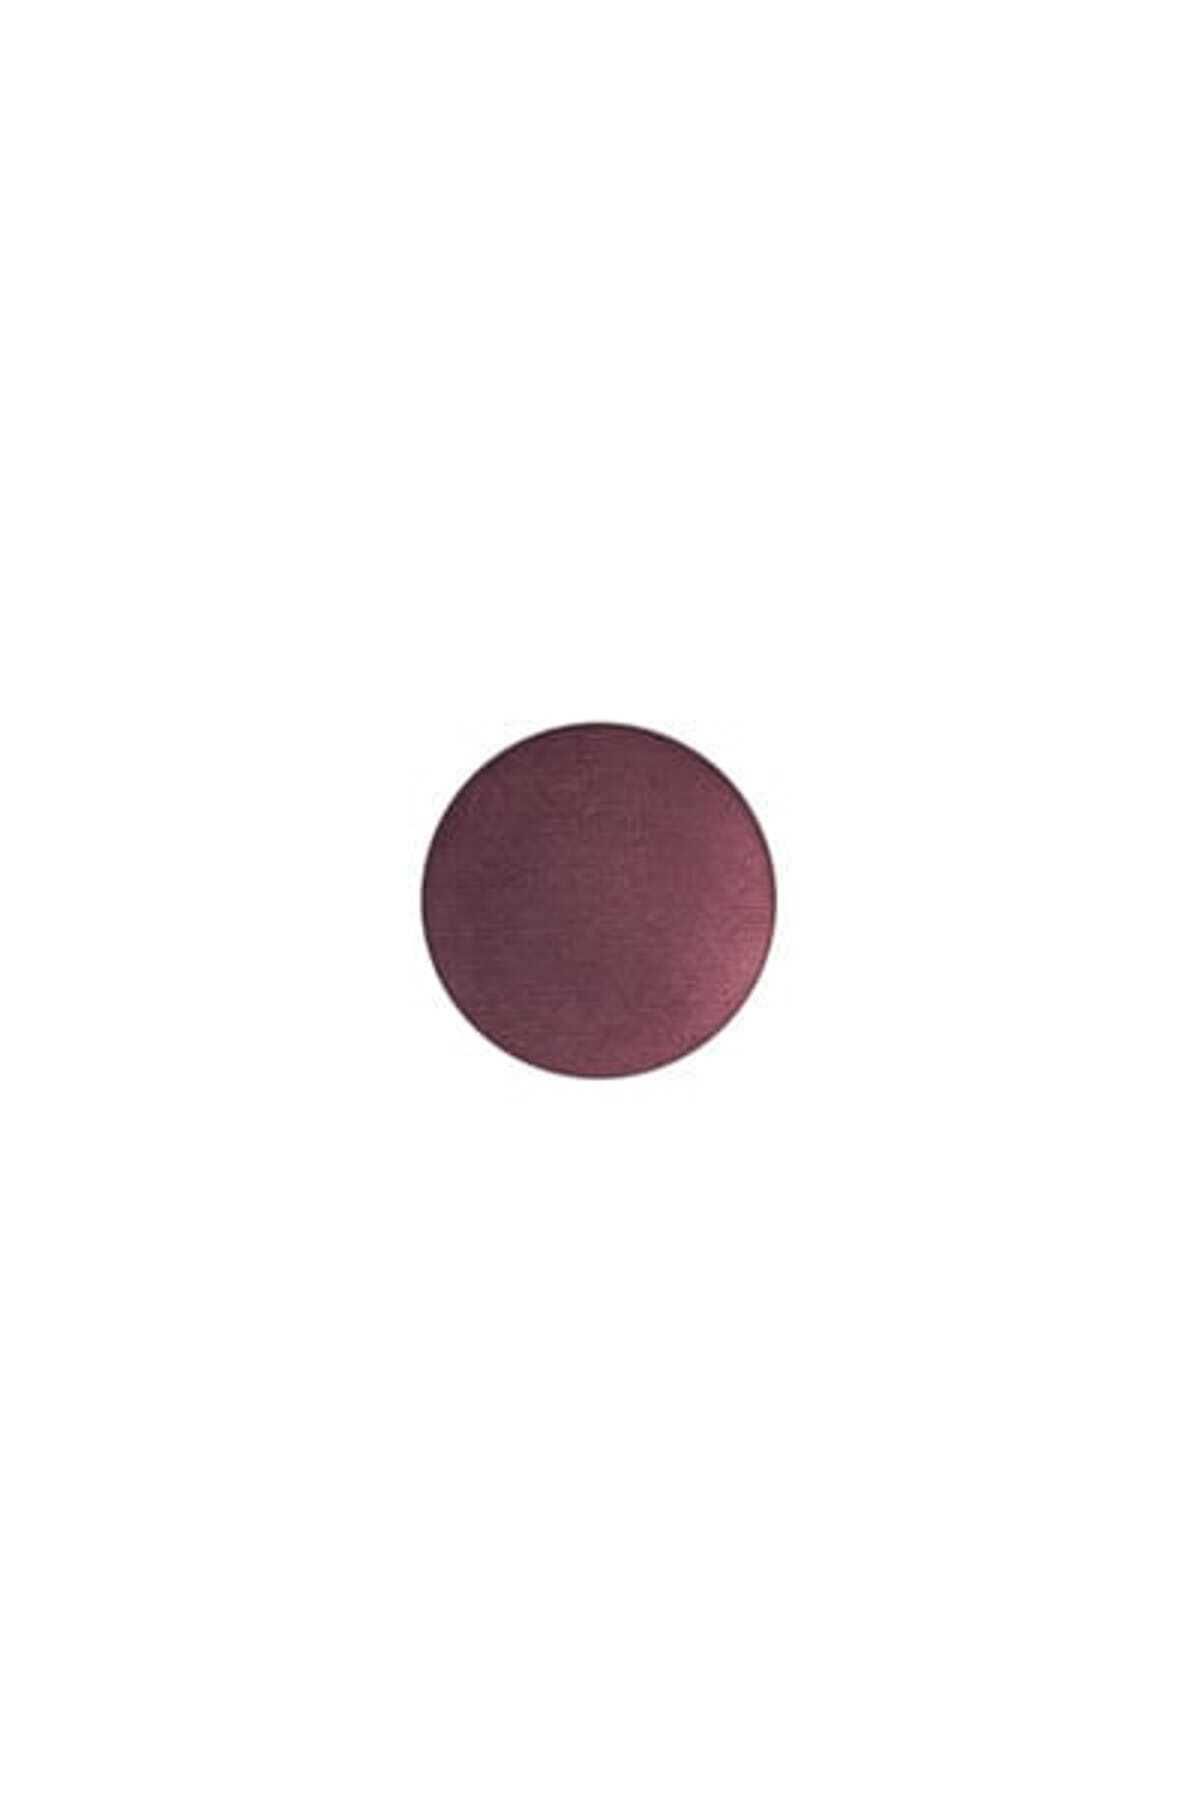 Mac Refill Eyeshadow Sketch Eye Shadow 1.5 g Skin153